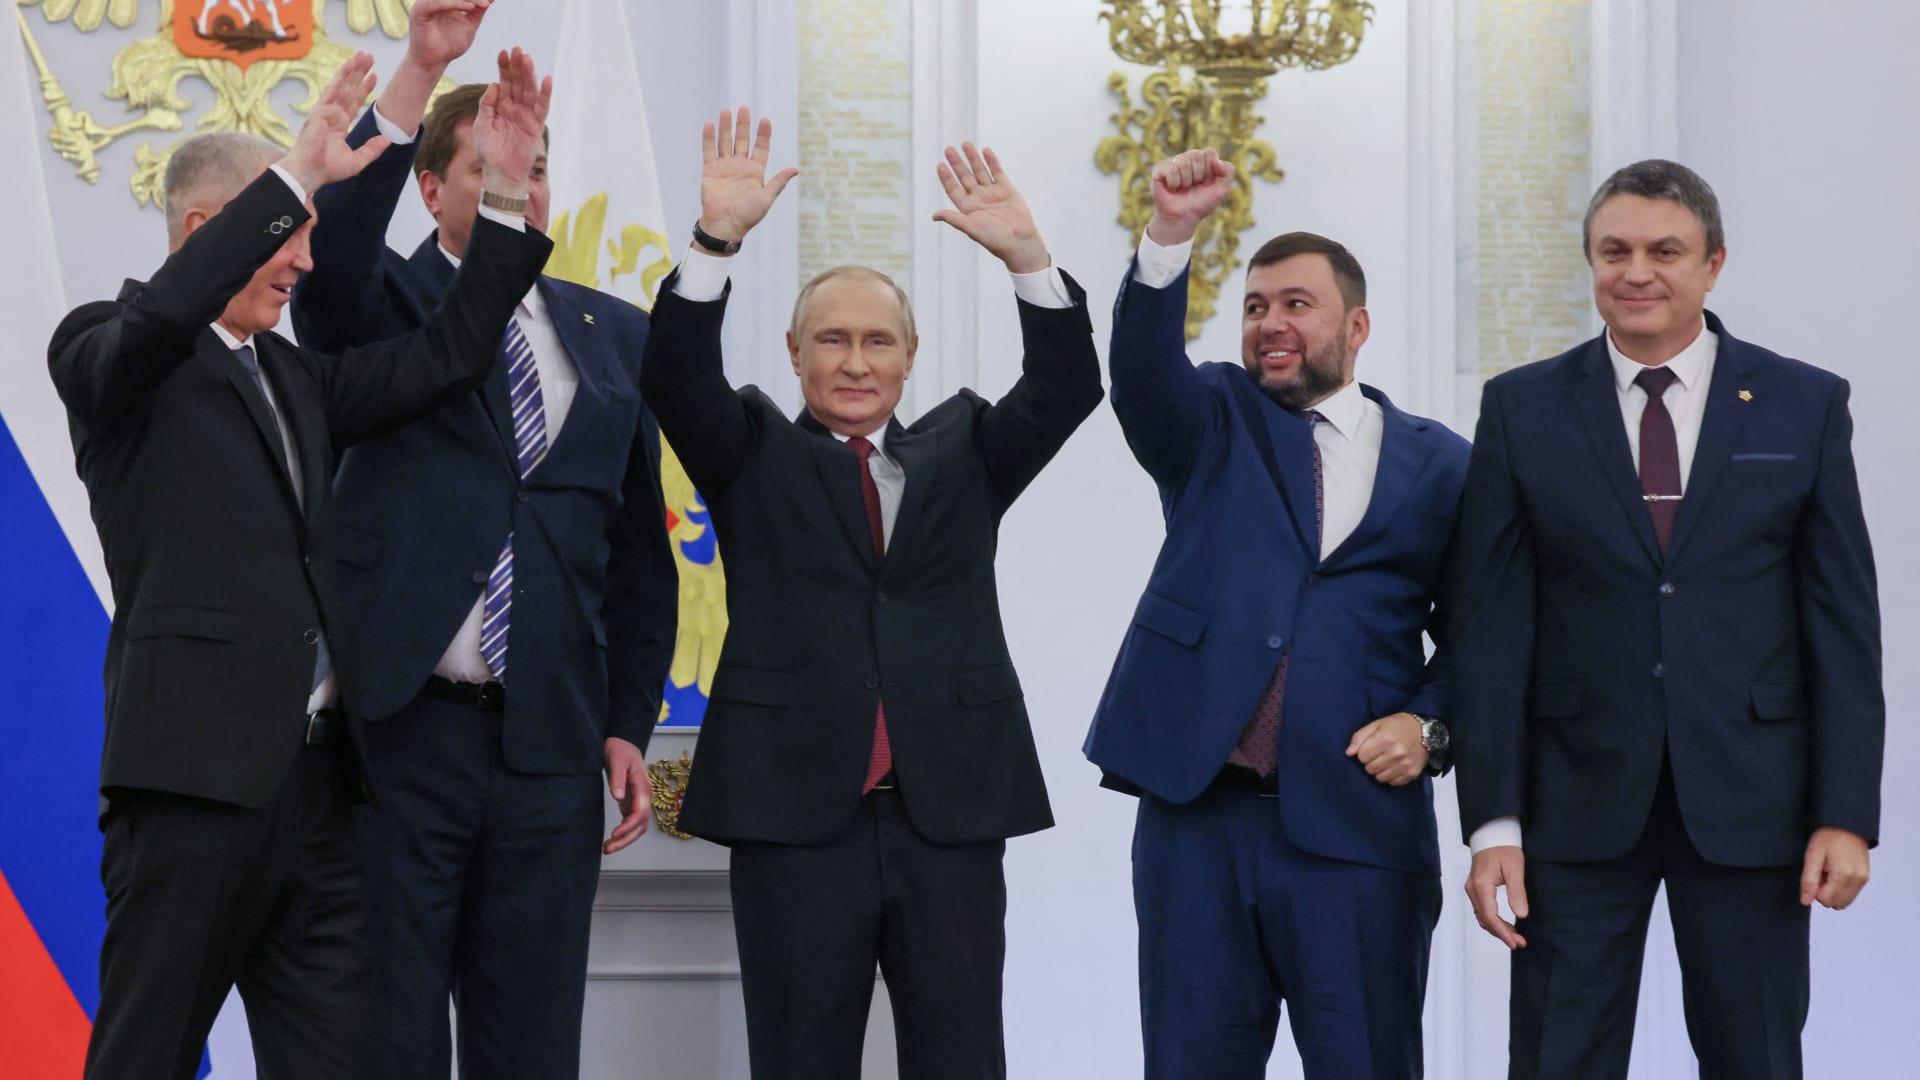 بعد إعلان بوتين ضم 4 مناطق أوكرانيا.. أول رد فعل من الاتحاد الأوروبي